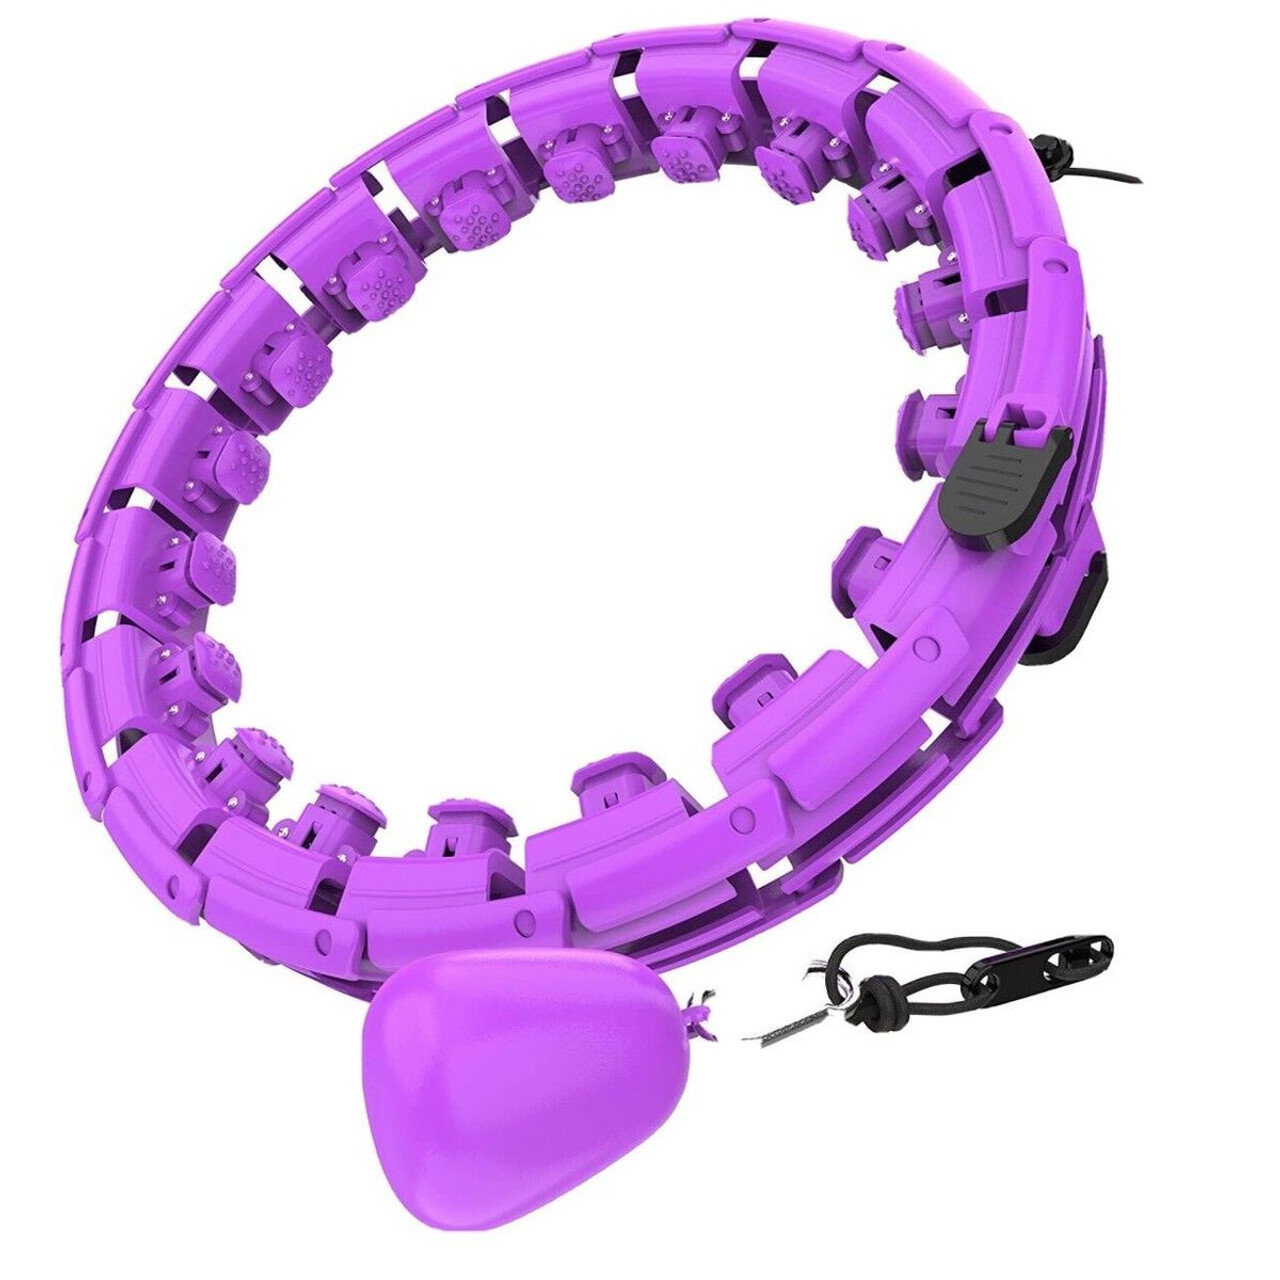 MSIUSU® Smart Hula Exercise Hoop product image